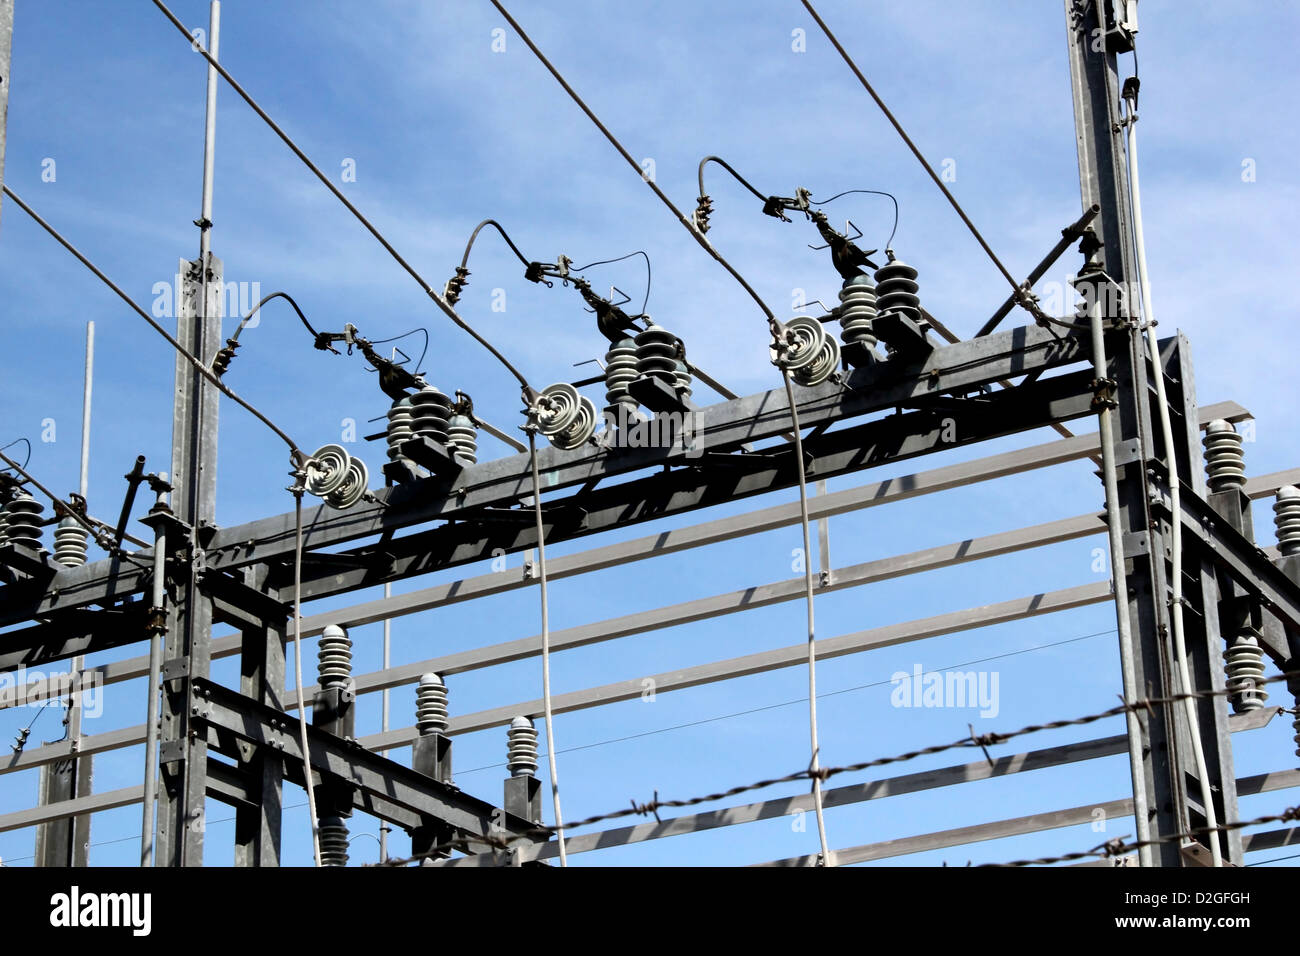 Stahlbau, Drähte, Spulen und Kabel eines elektrischen Kraftwerks vor blauem Himmel. Stockfoto